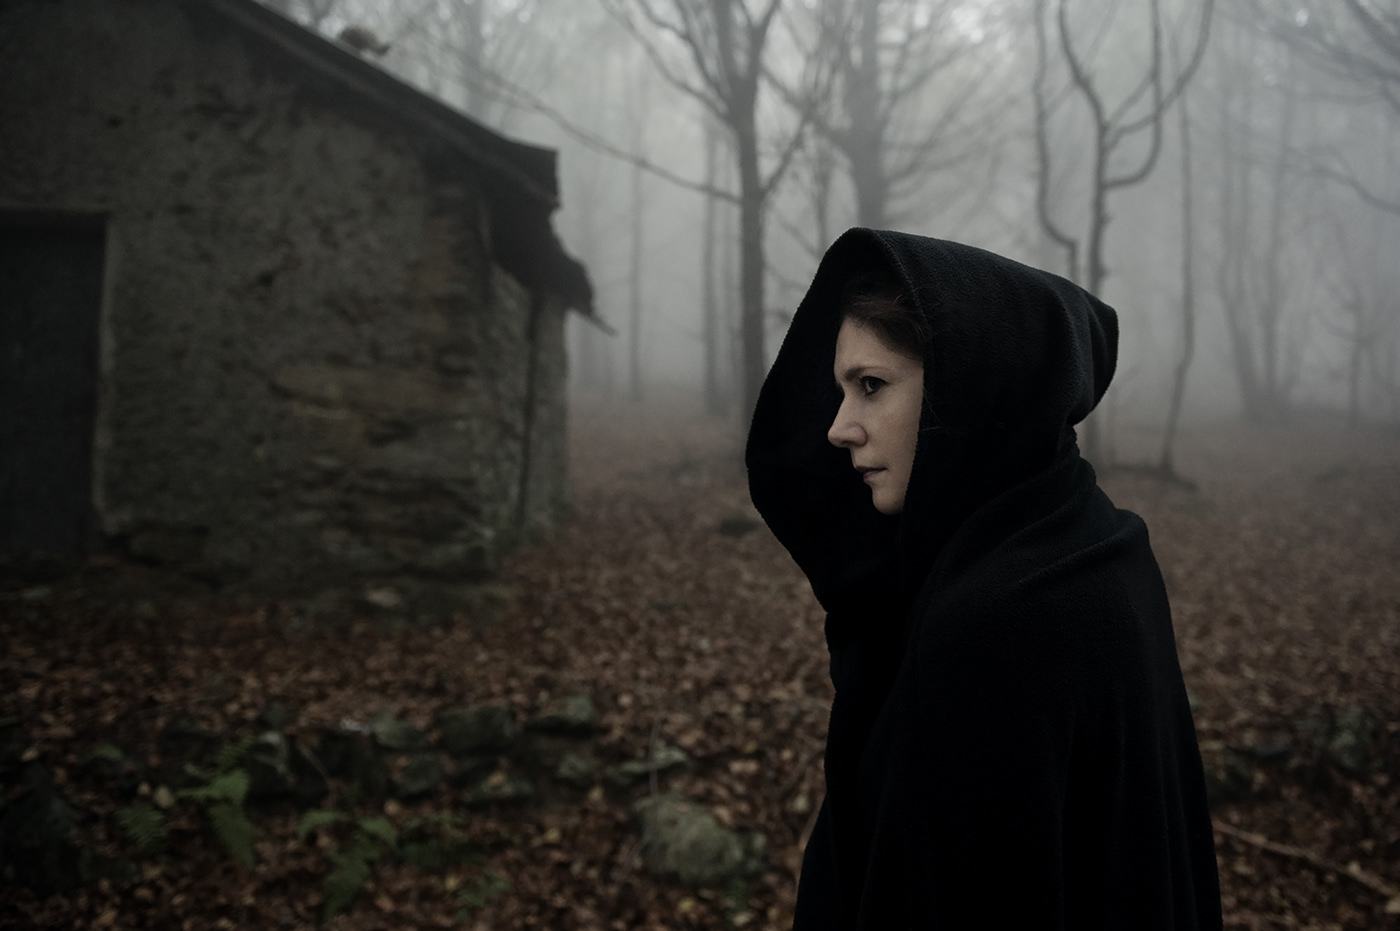 autumn wood fog dark darkness fear gothic black